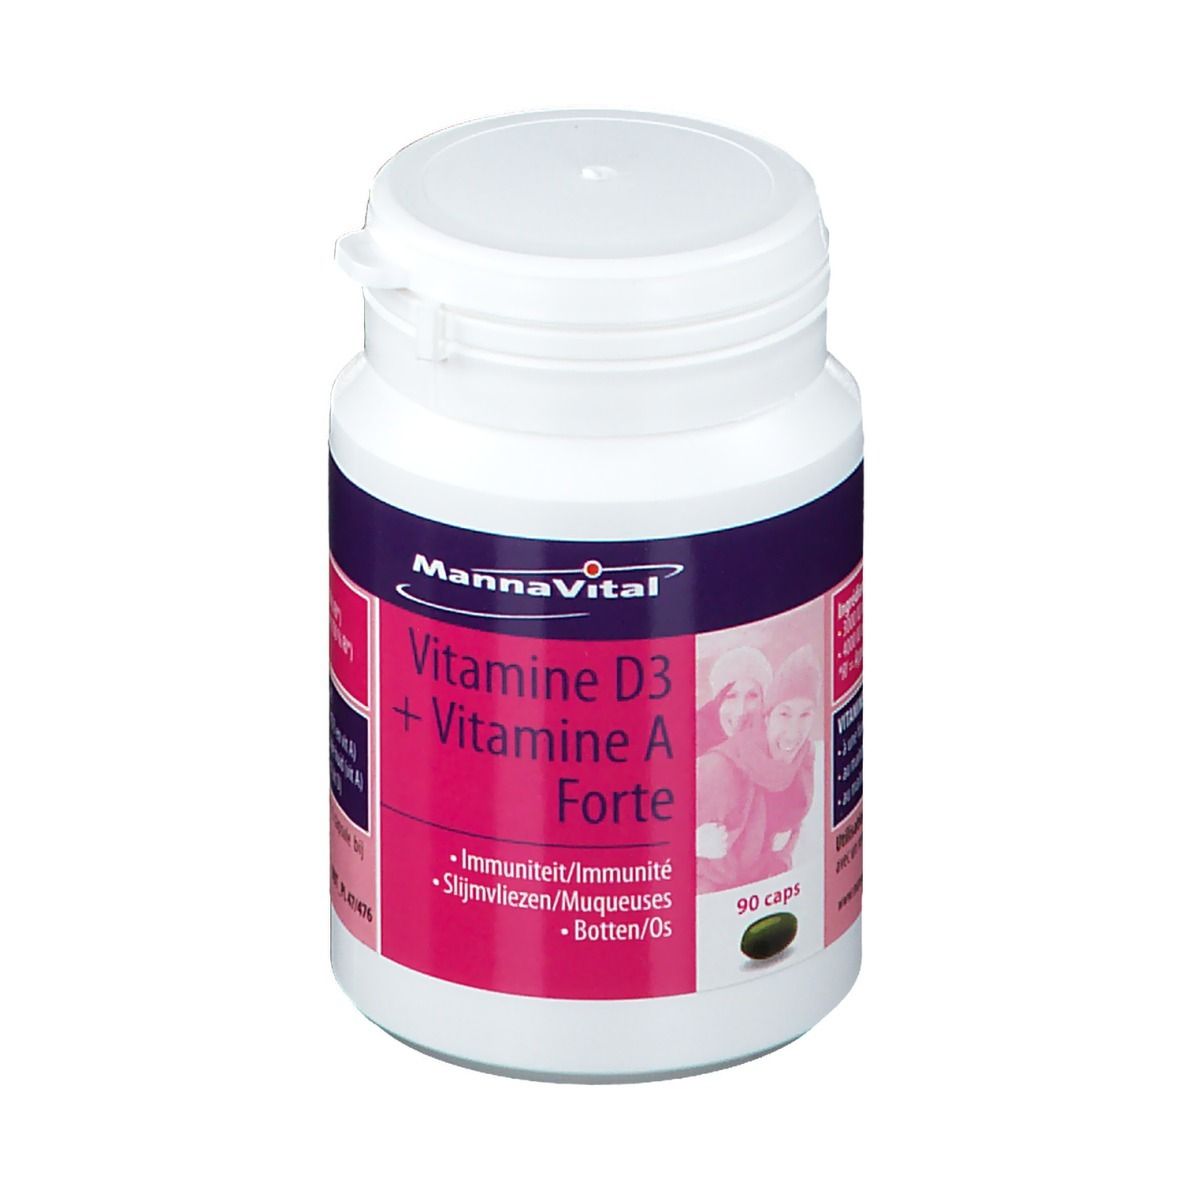 Mannavital Vitamine D3 + Vitamine A Forte